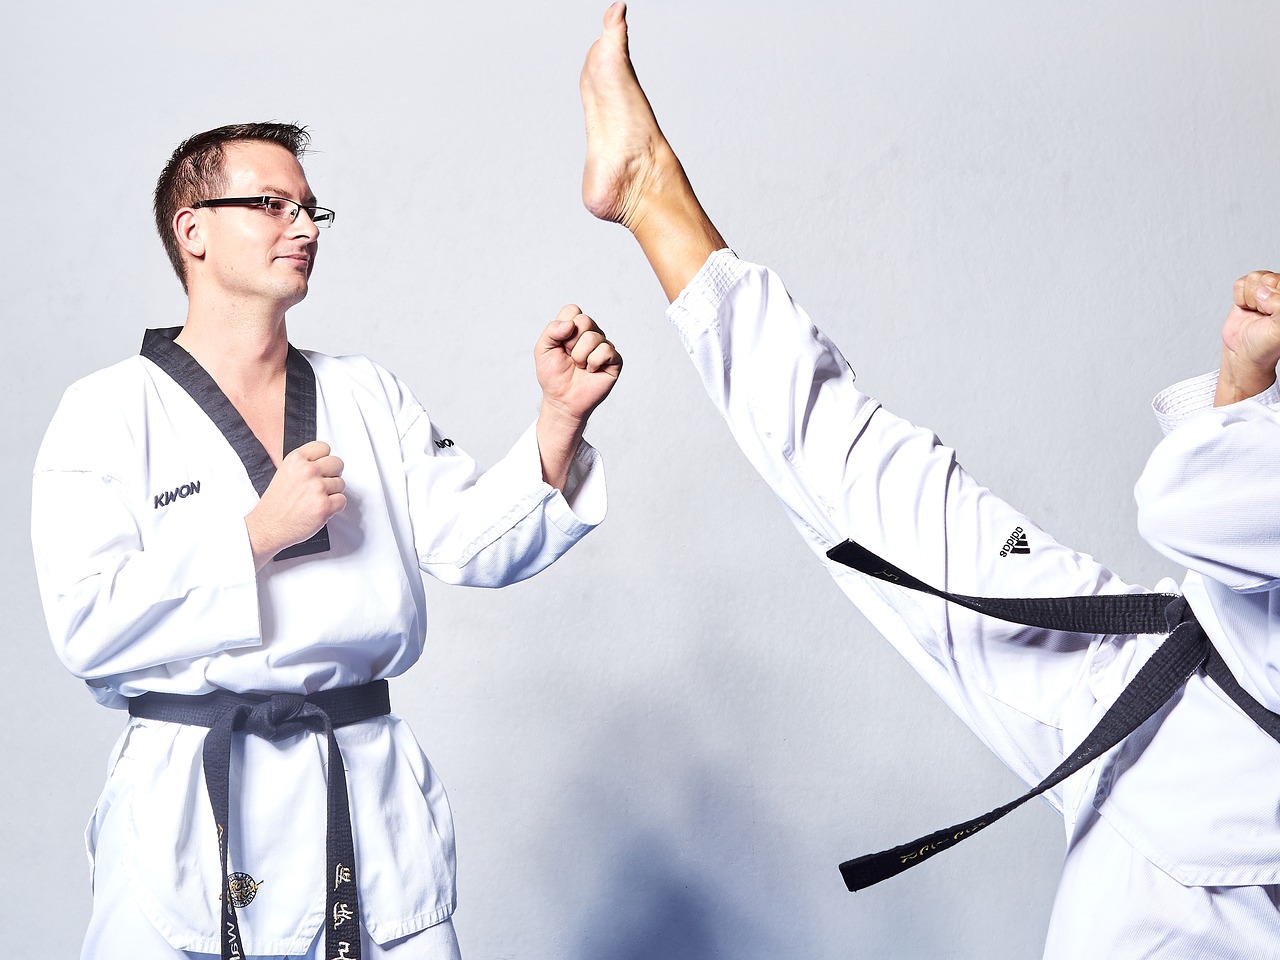 Jakie wyposażenie się przyda podczas uprawiania taekwondo?